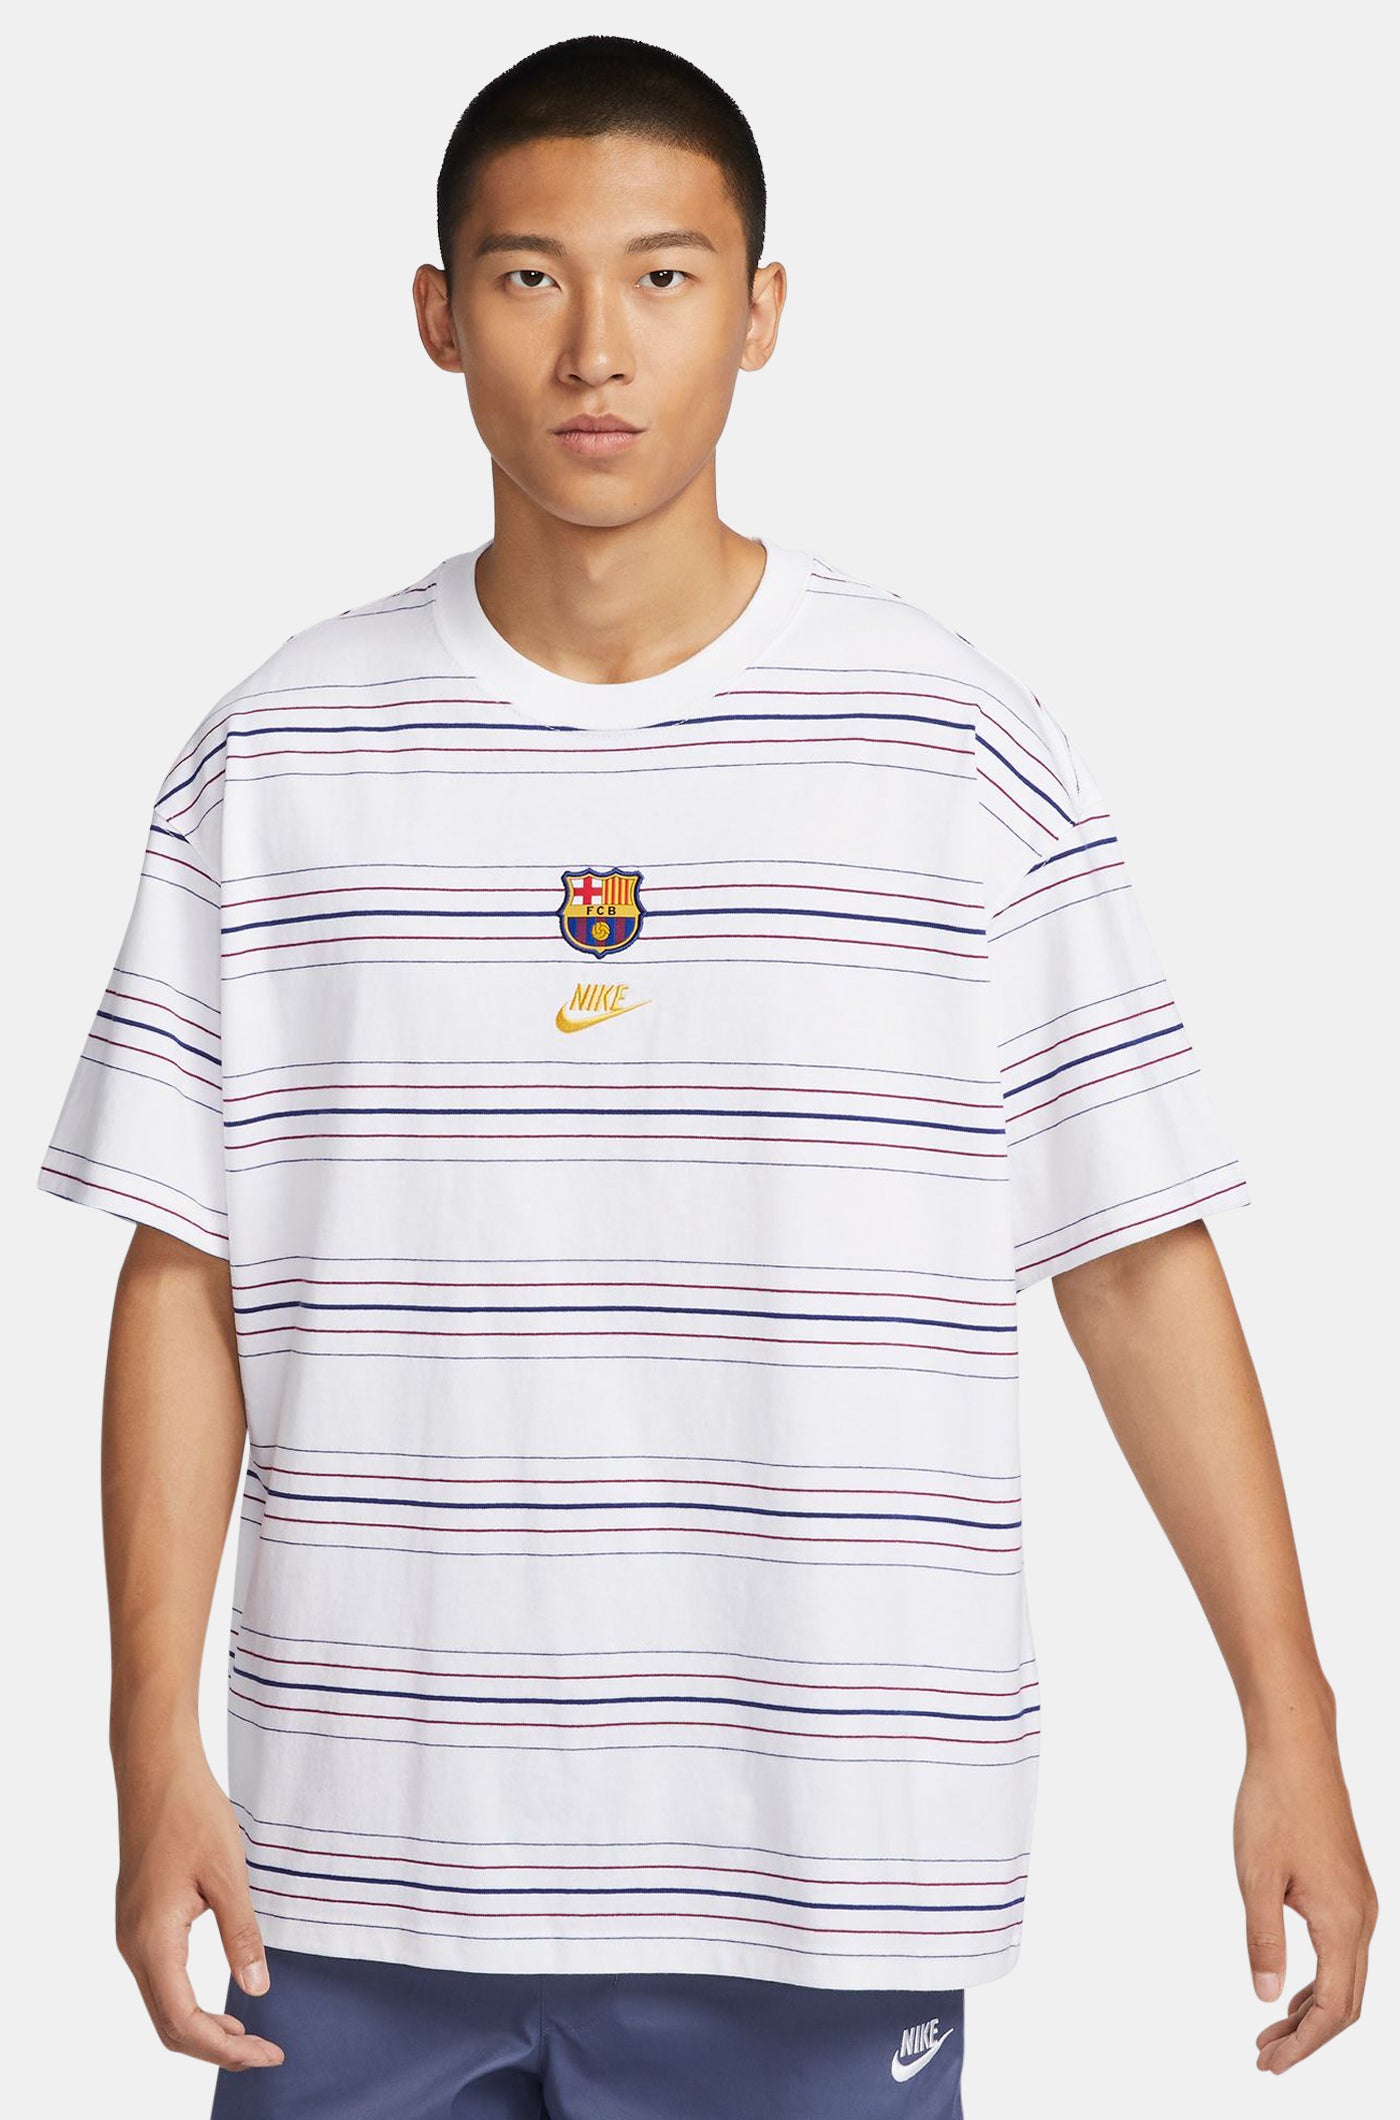 Camiseta blanca rayas Barça Nike